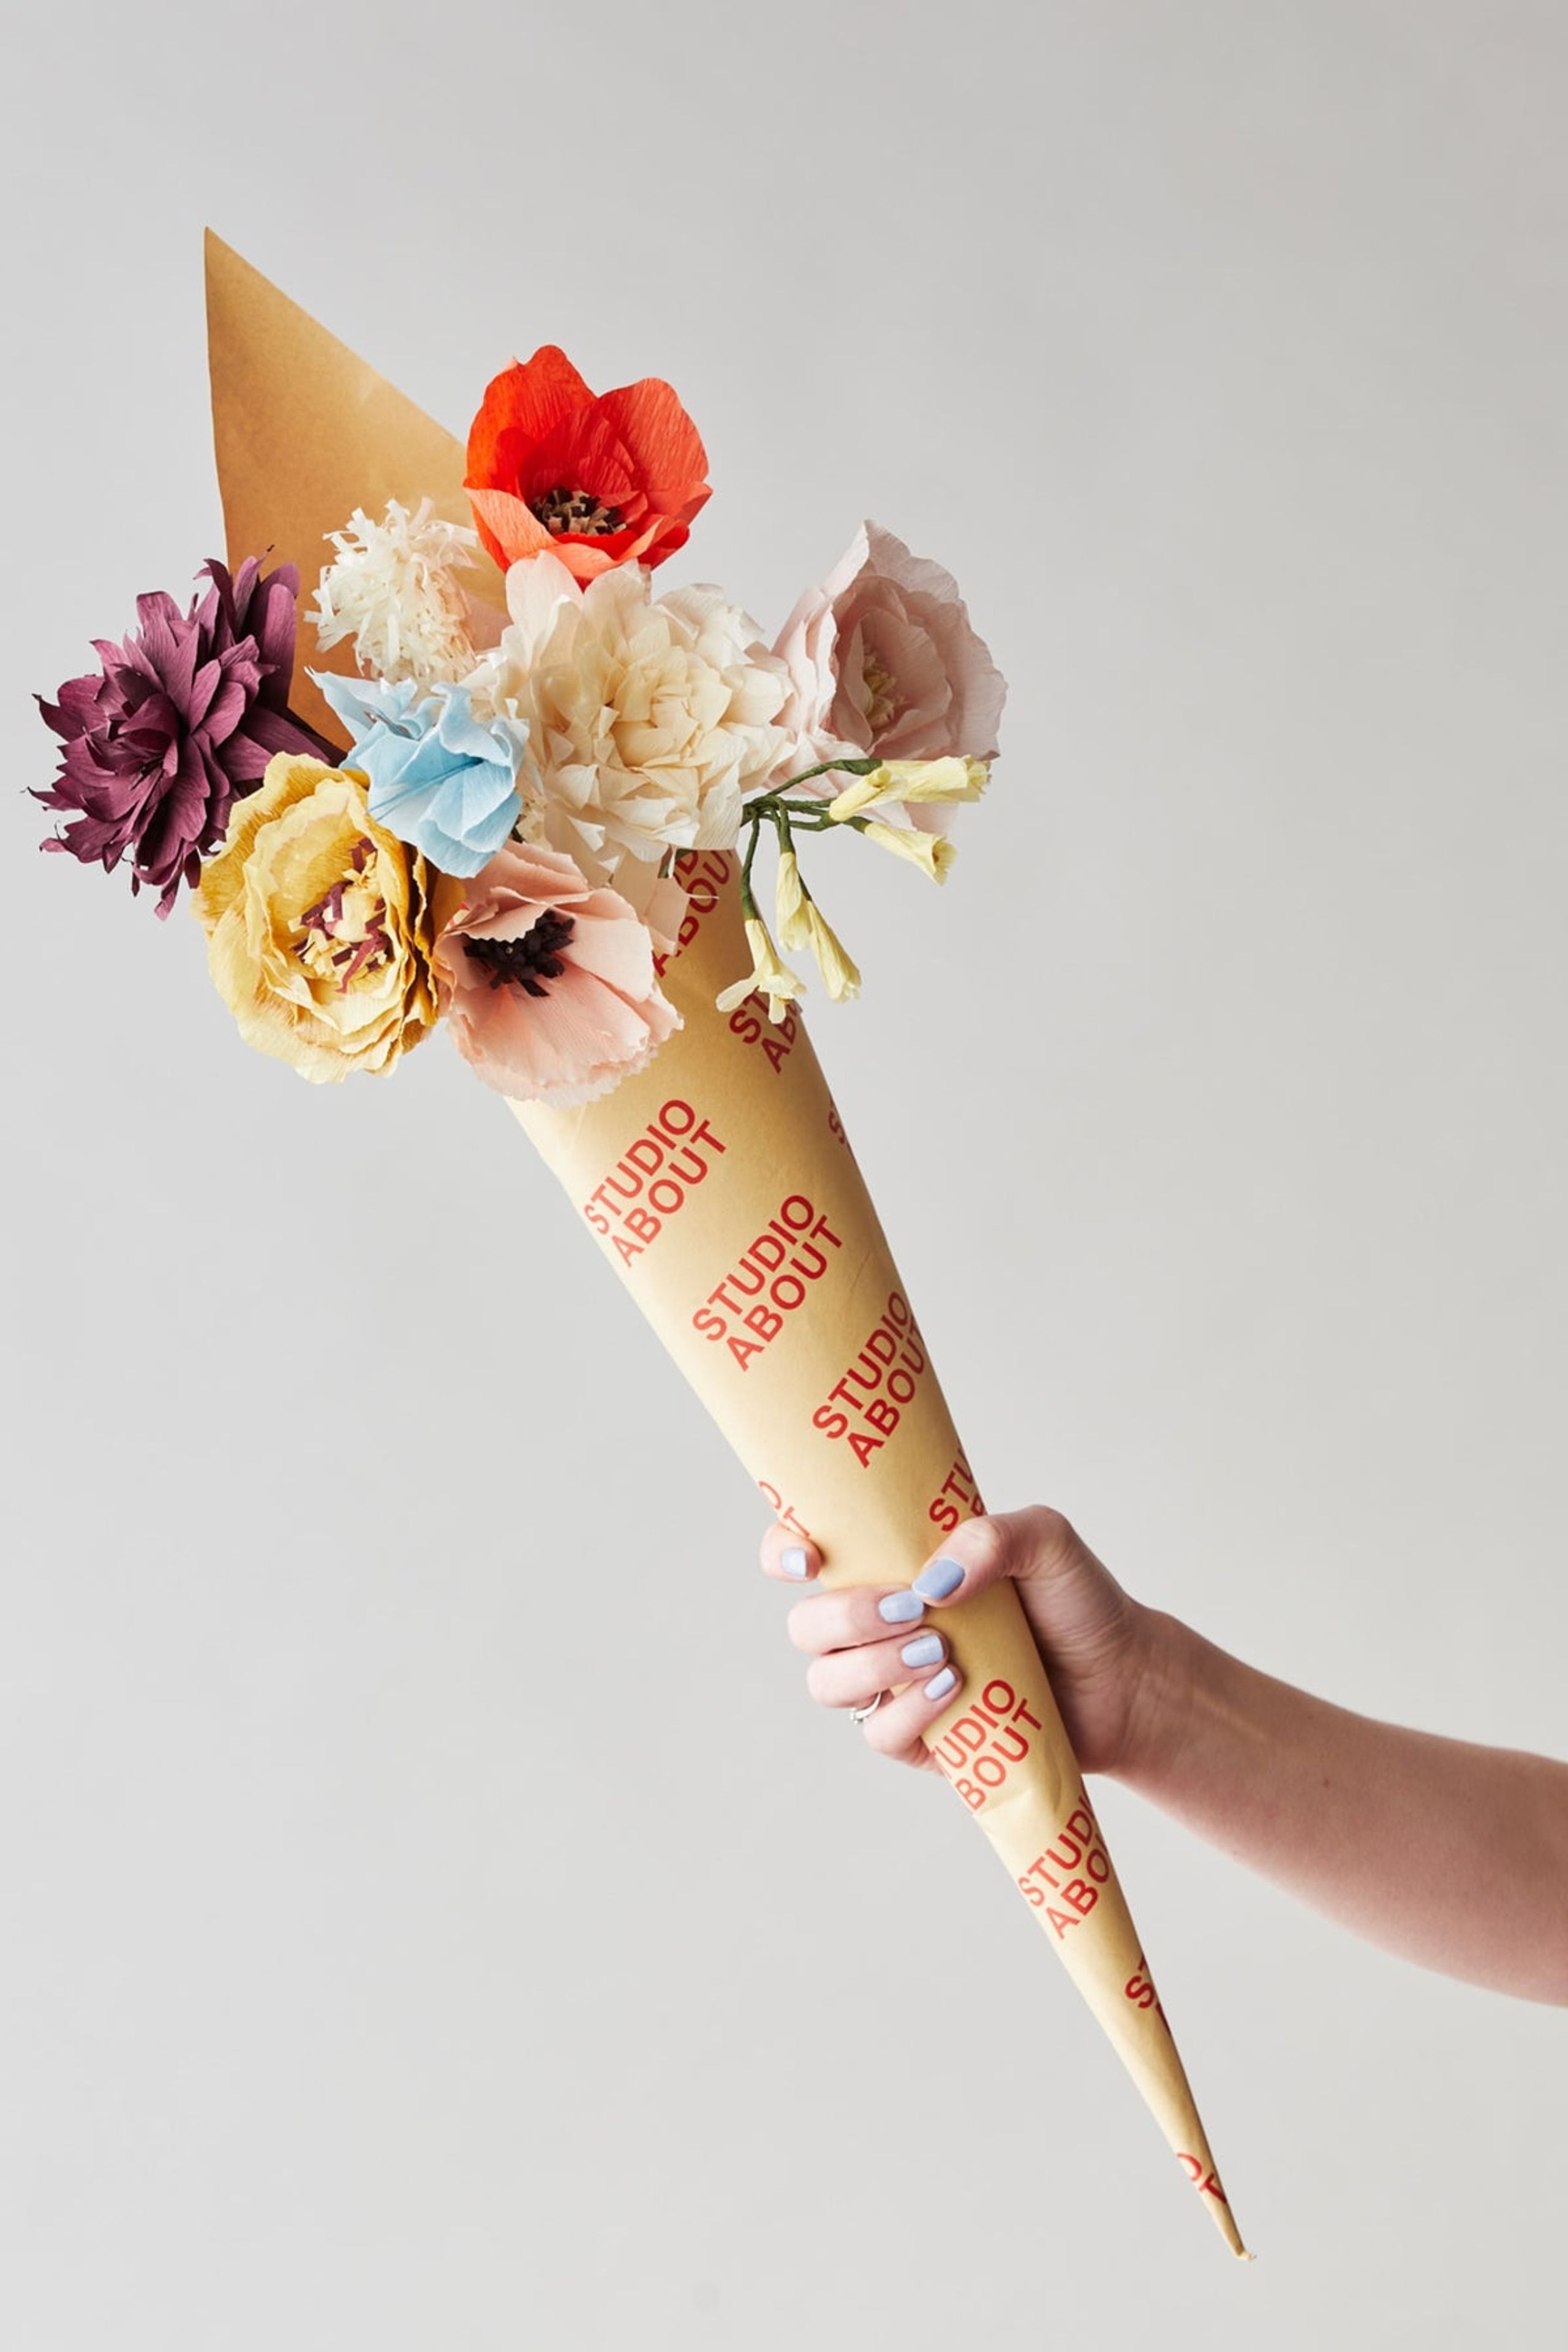 Studio About - Papirblomster - Paper Flowers Bouquet - Surprise9